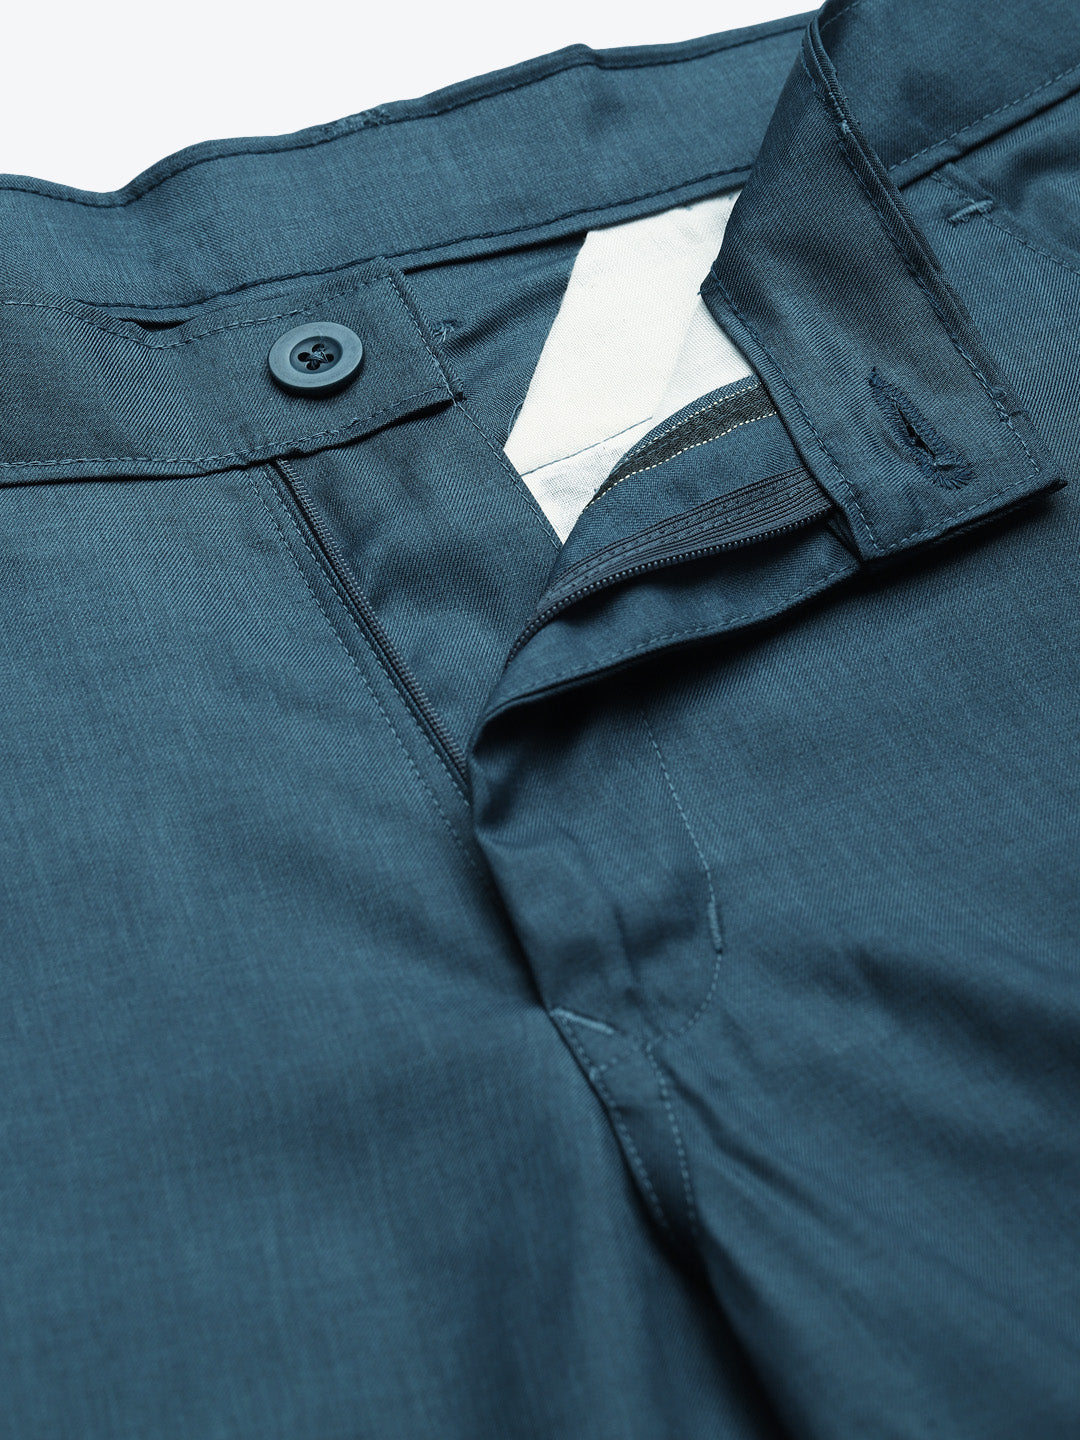 Men's Cotton Blend Teal Blue Solid Trouser - Sojanya